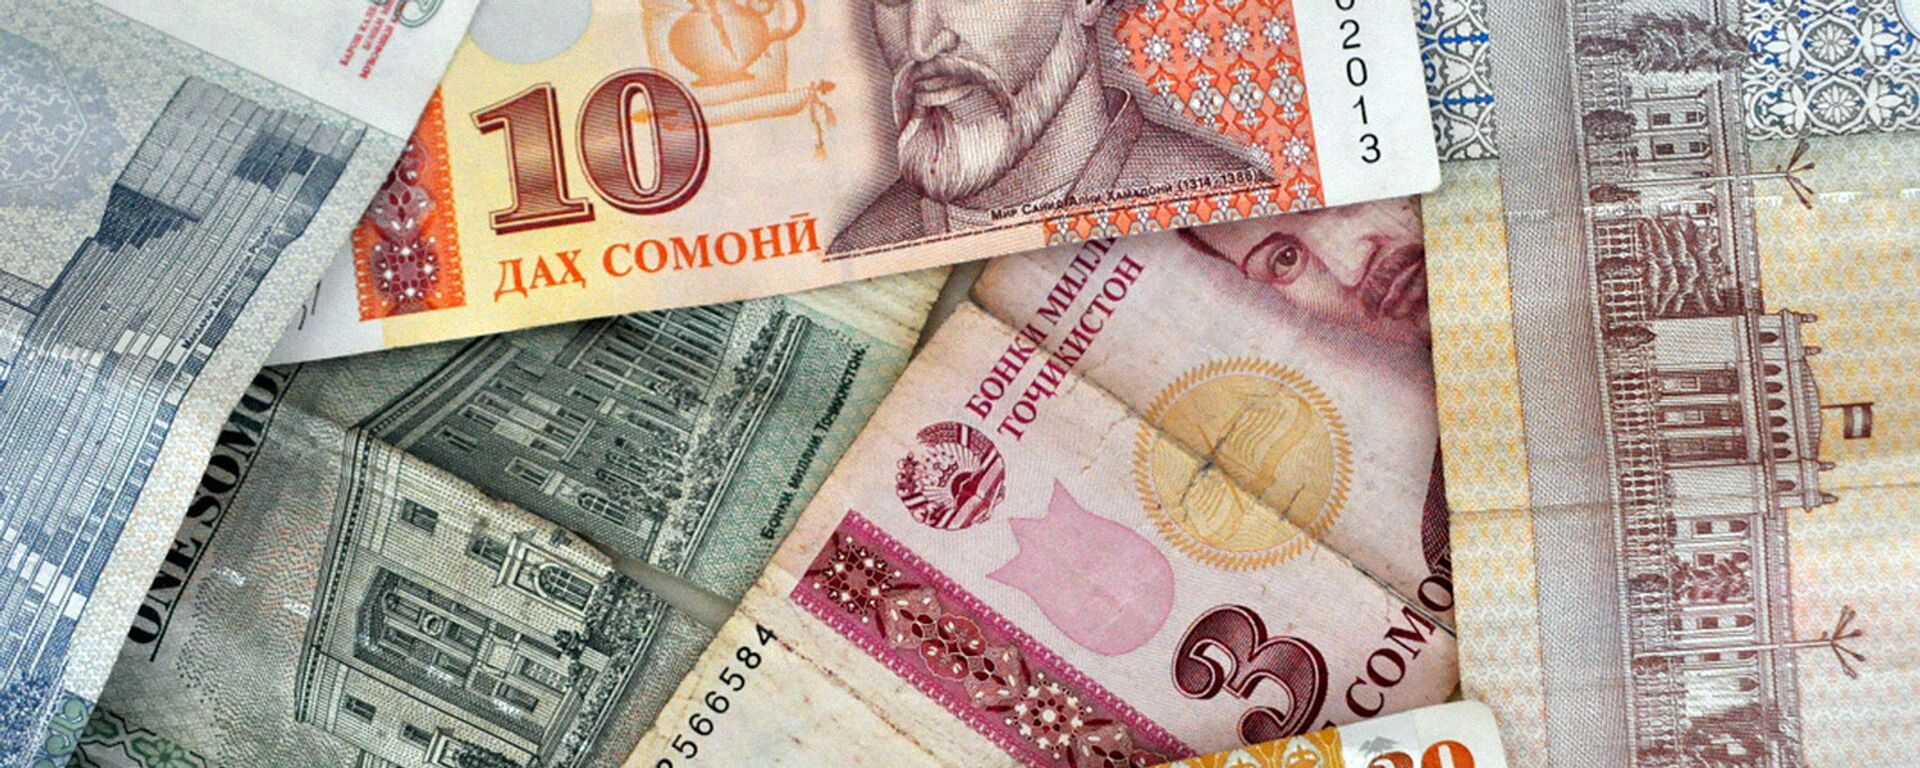 Таджикские денежные знаки Сомони - Sputnik Таджикистан, 1920, 21.07.2021